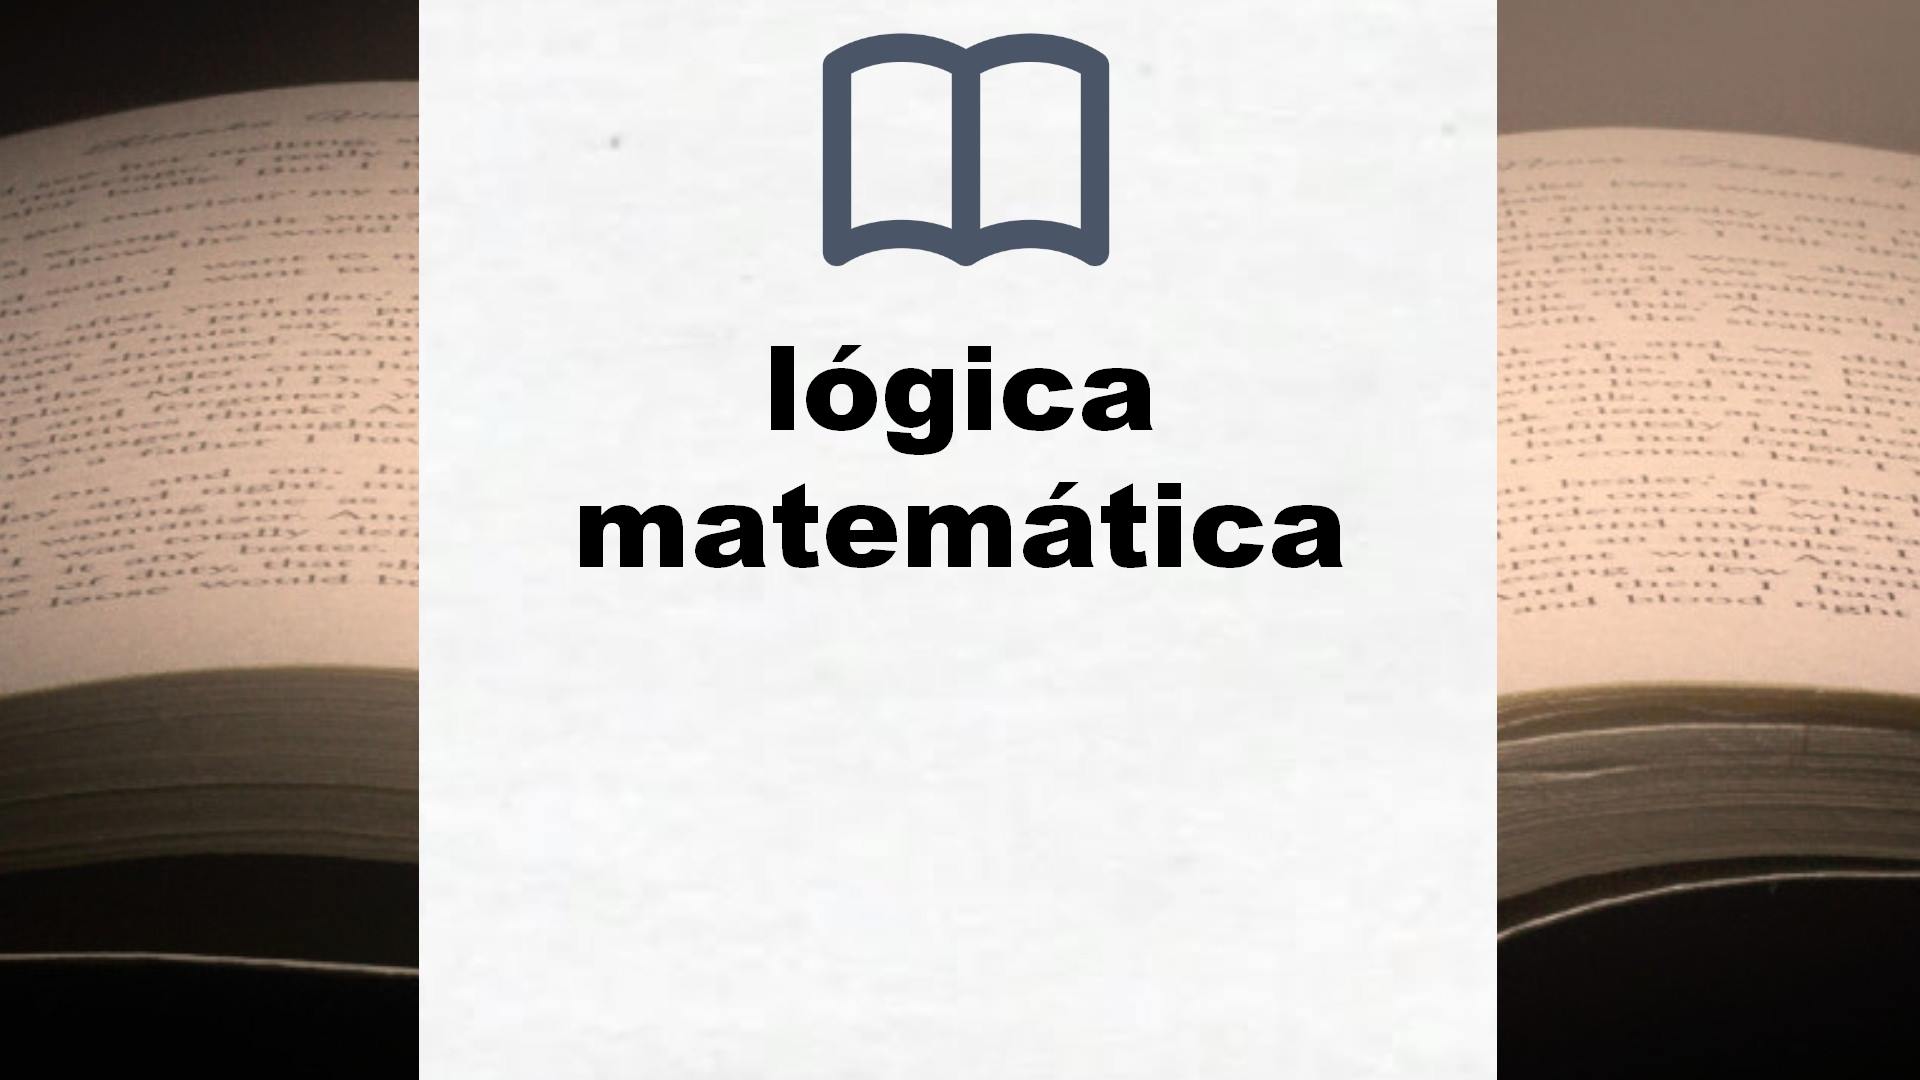 Libros sobre lógica matemática